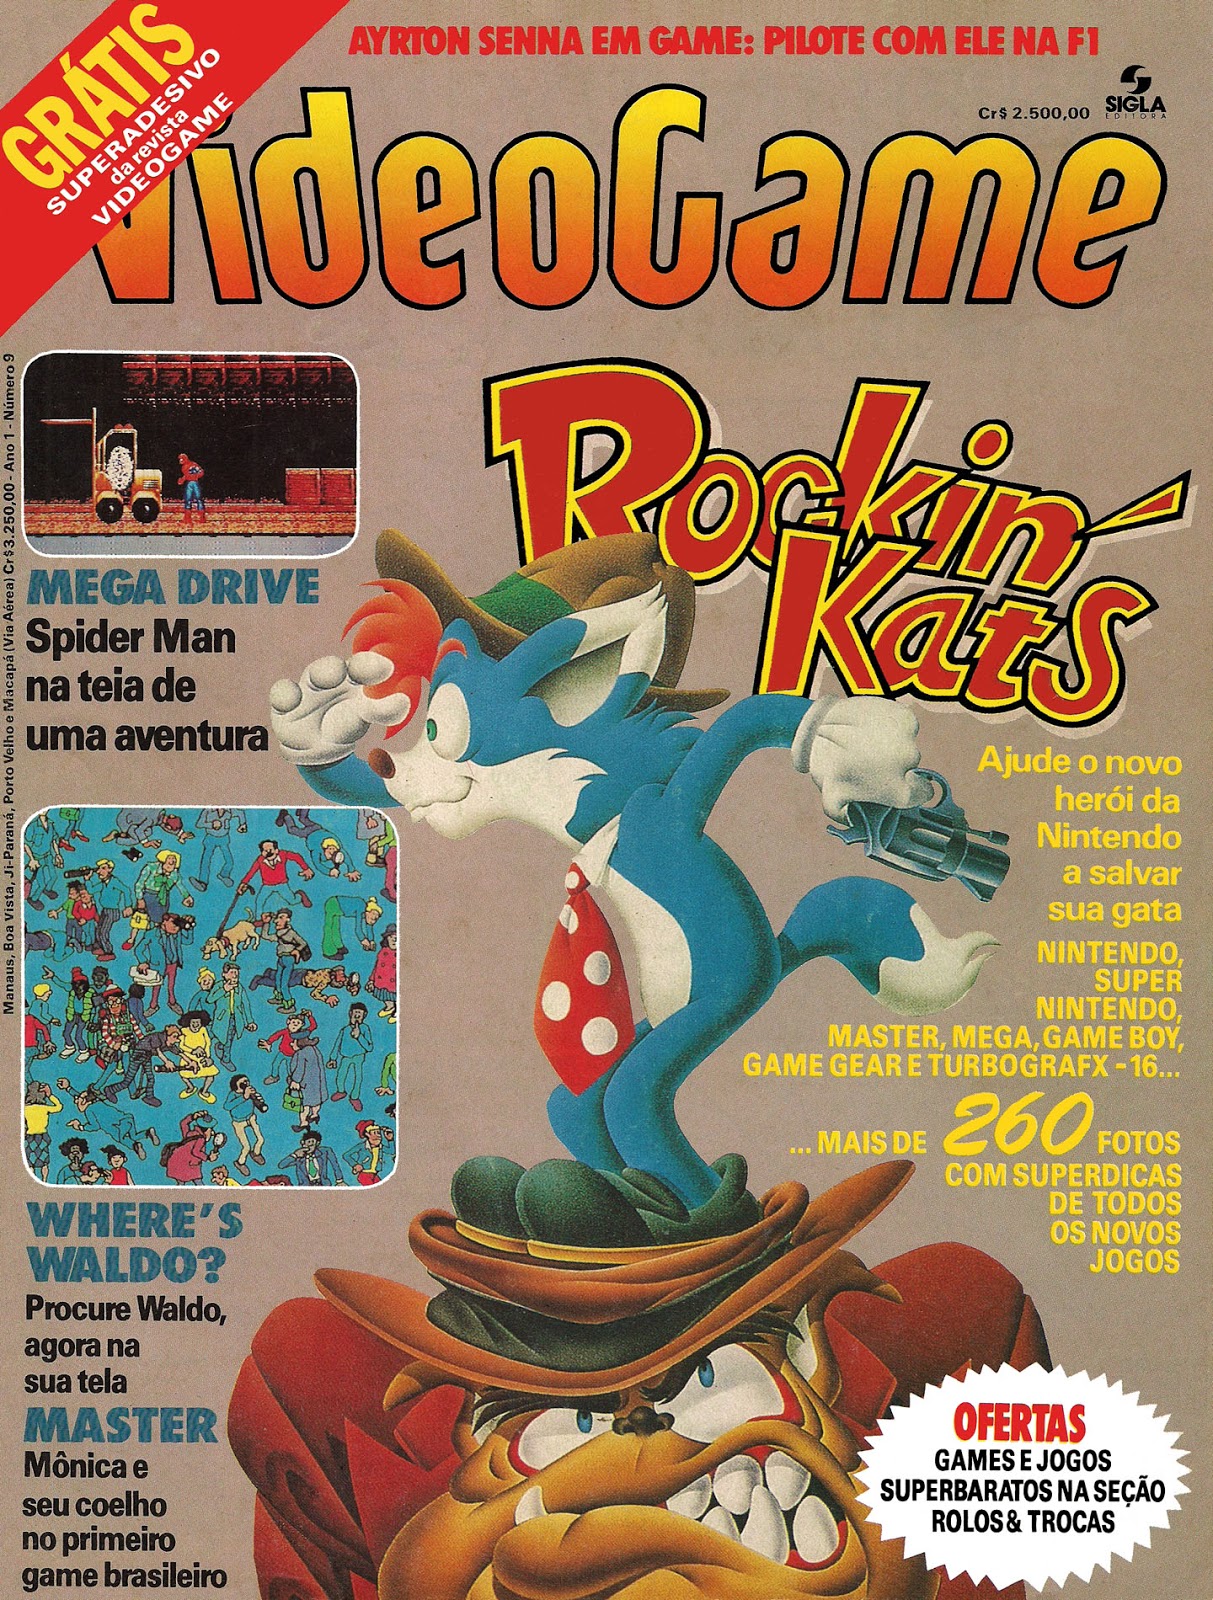 Retroavengers – Revistas antigas de videogames